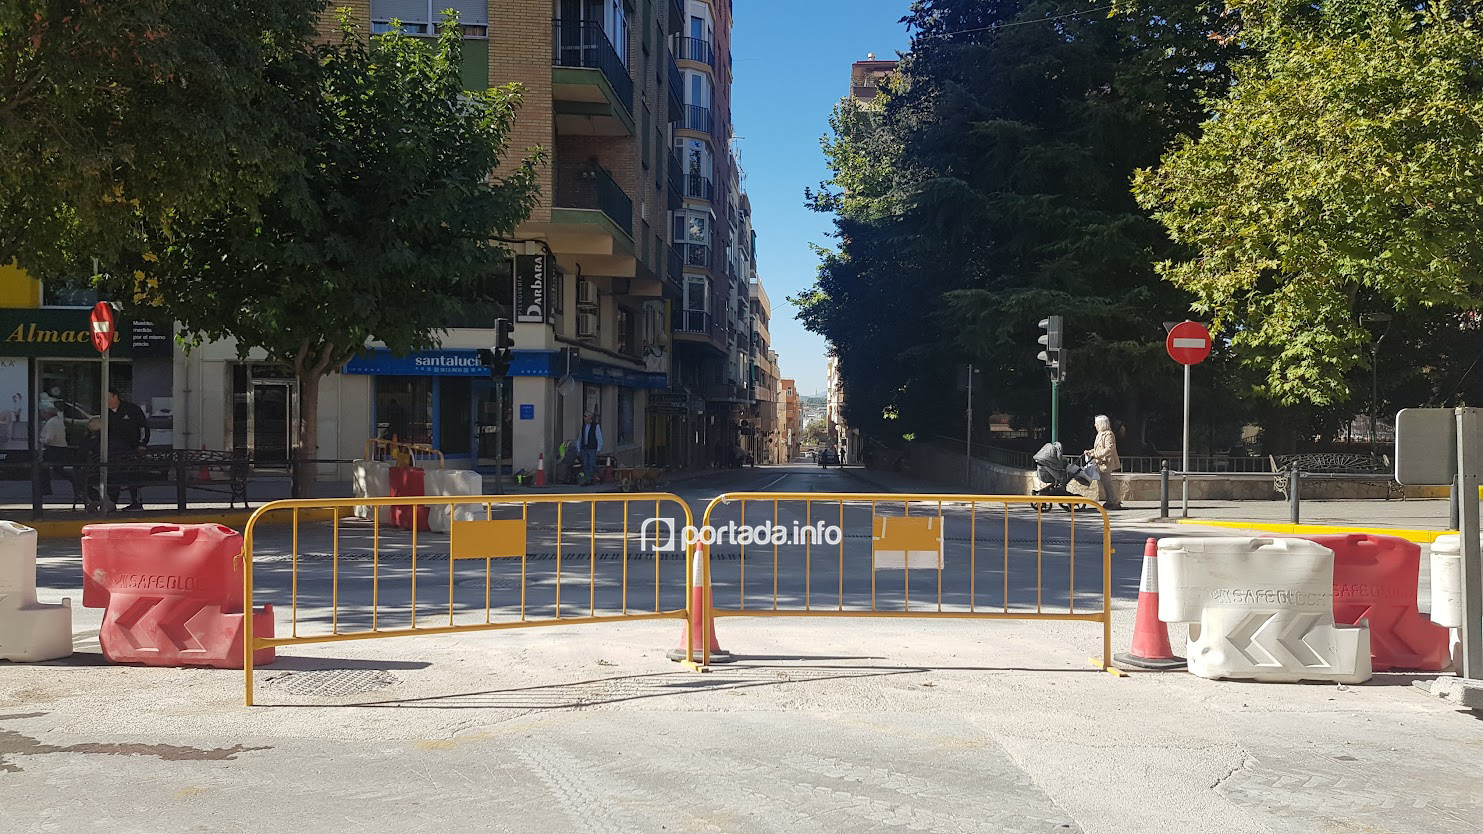 El lunes cortarán al tráfico un carril de la plaza María Auxiliadora intersección con Avenida Constitución